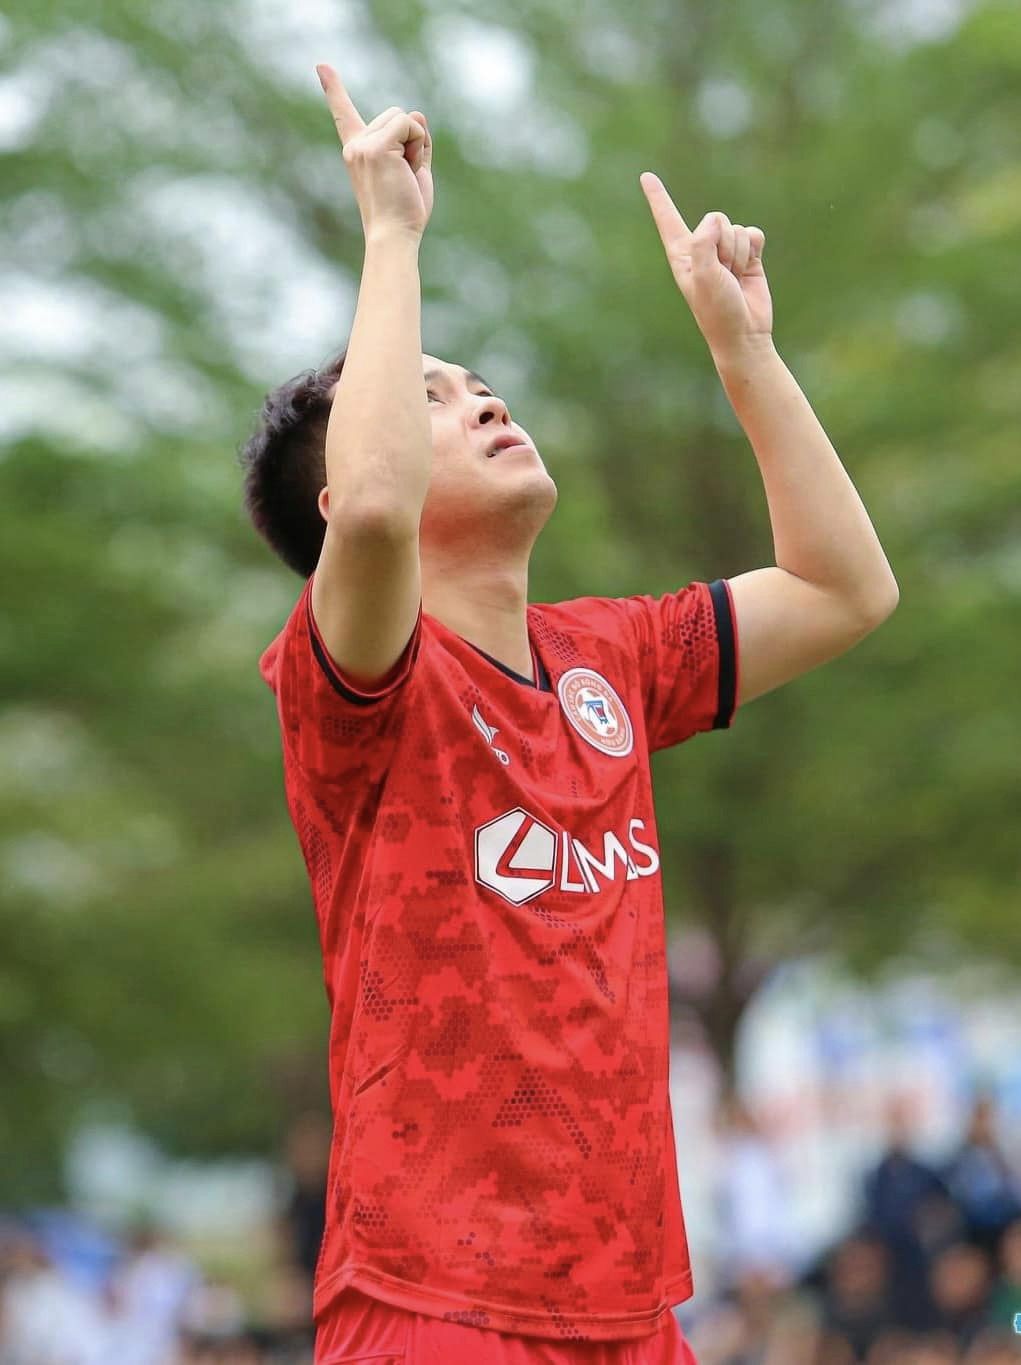 Thái Dương thi tuyển vào CLB Hoàng Anh Gia Lai nhưng chỉ đến vòng chung kết